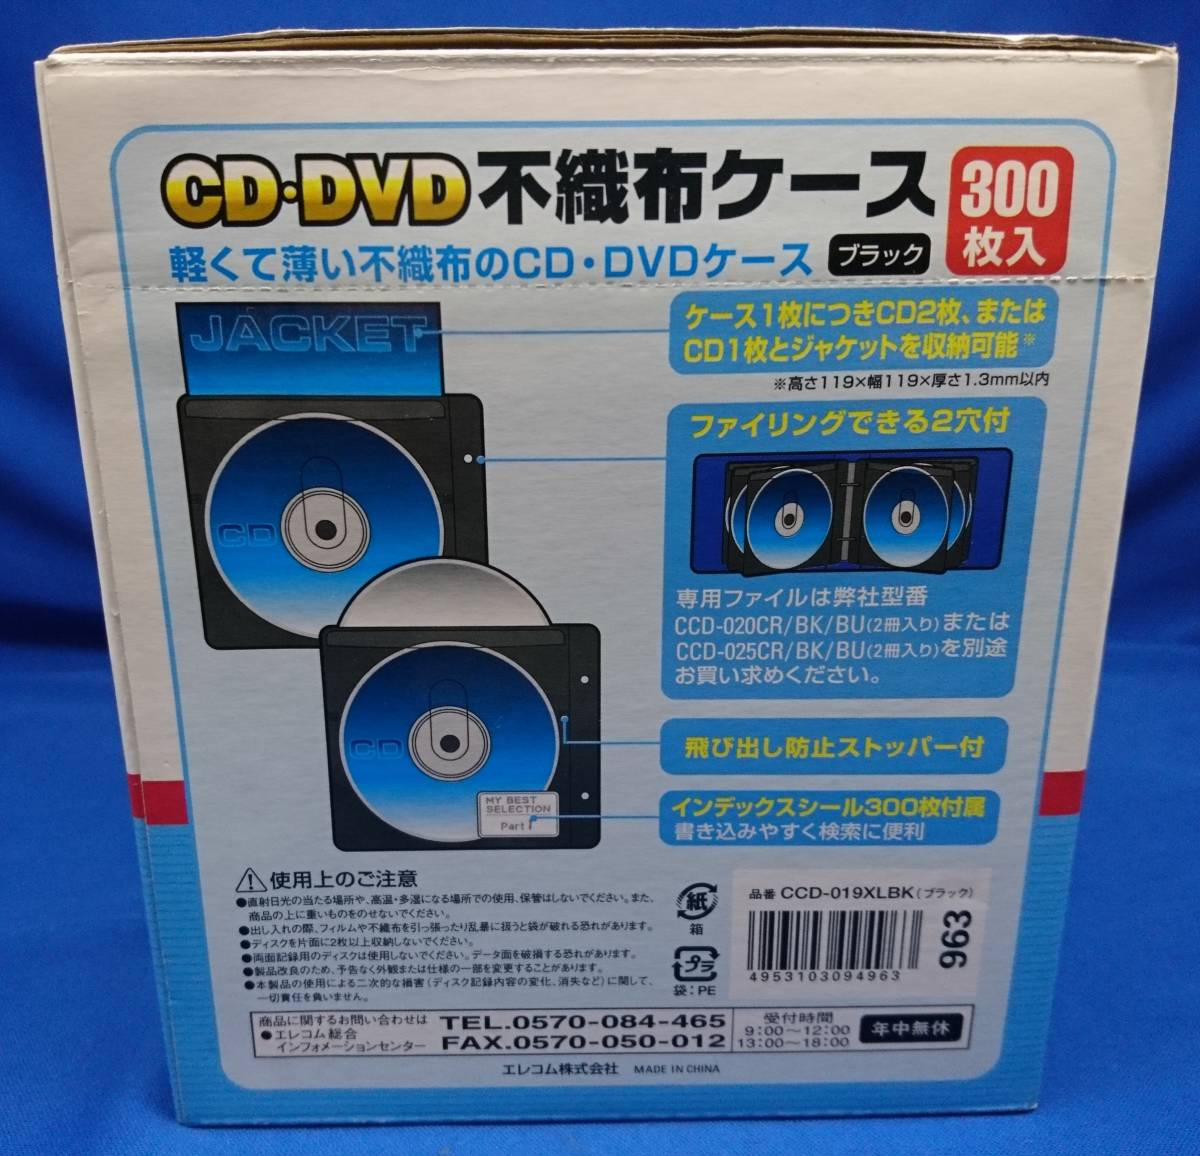 【未使用・2個セット】ELECOM(エレコム) 2穴リングファイル用CD・DVD不織布ケース 300枚入り CCD-019XLWH+CCD-019XLBK_画像3